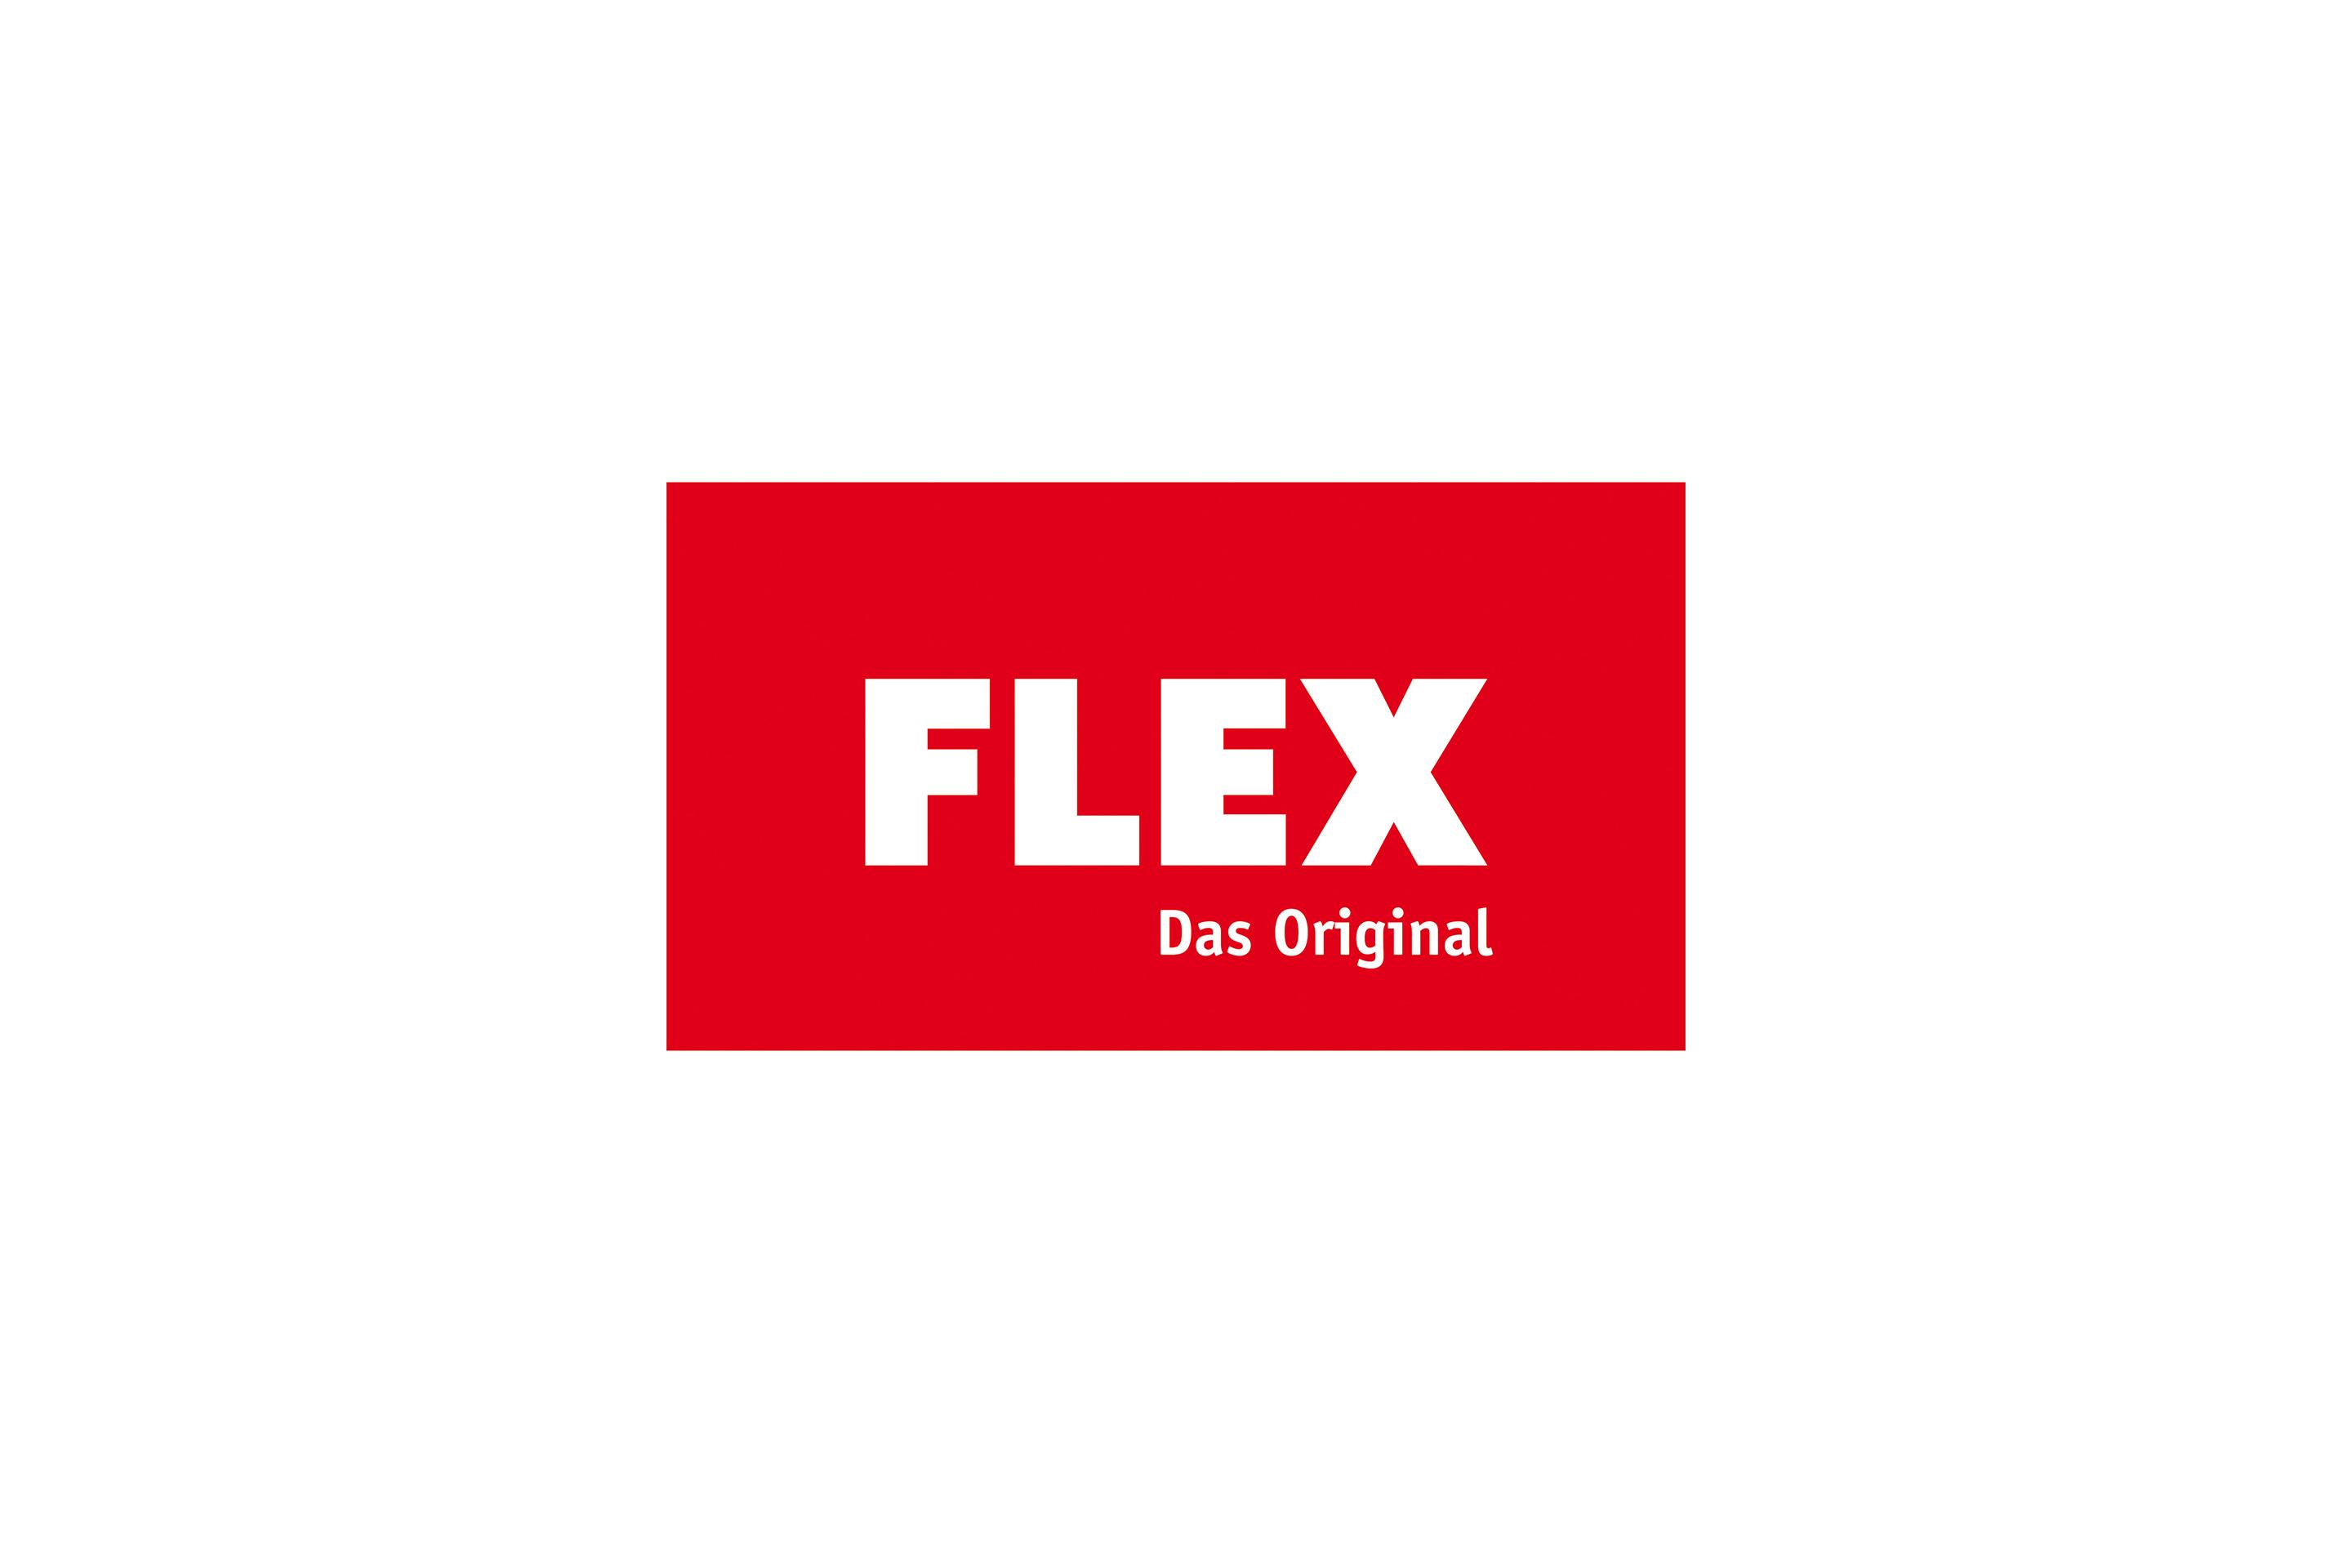 FLEX La historia del logotipo original